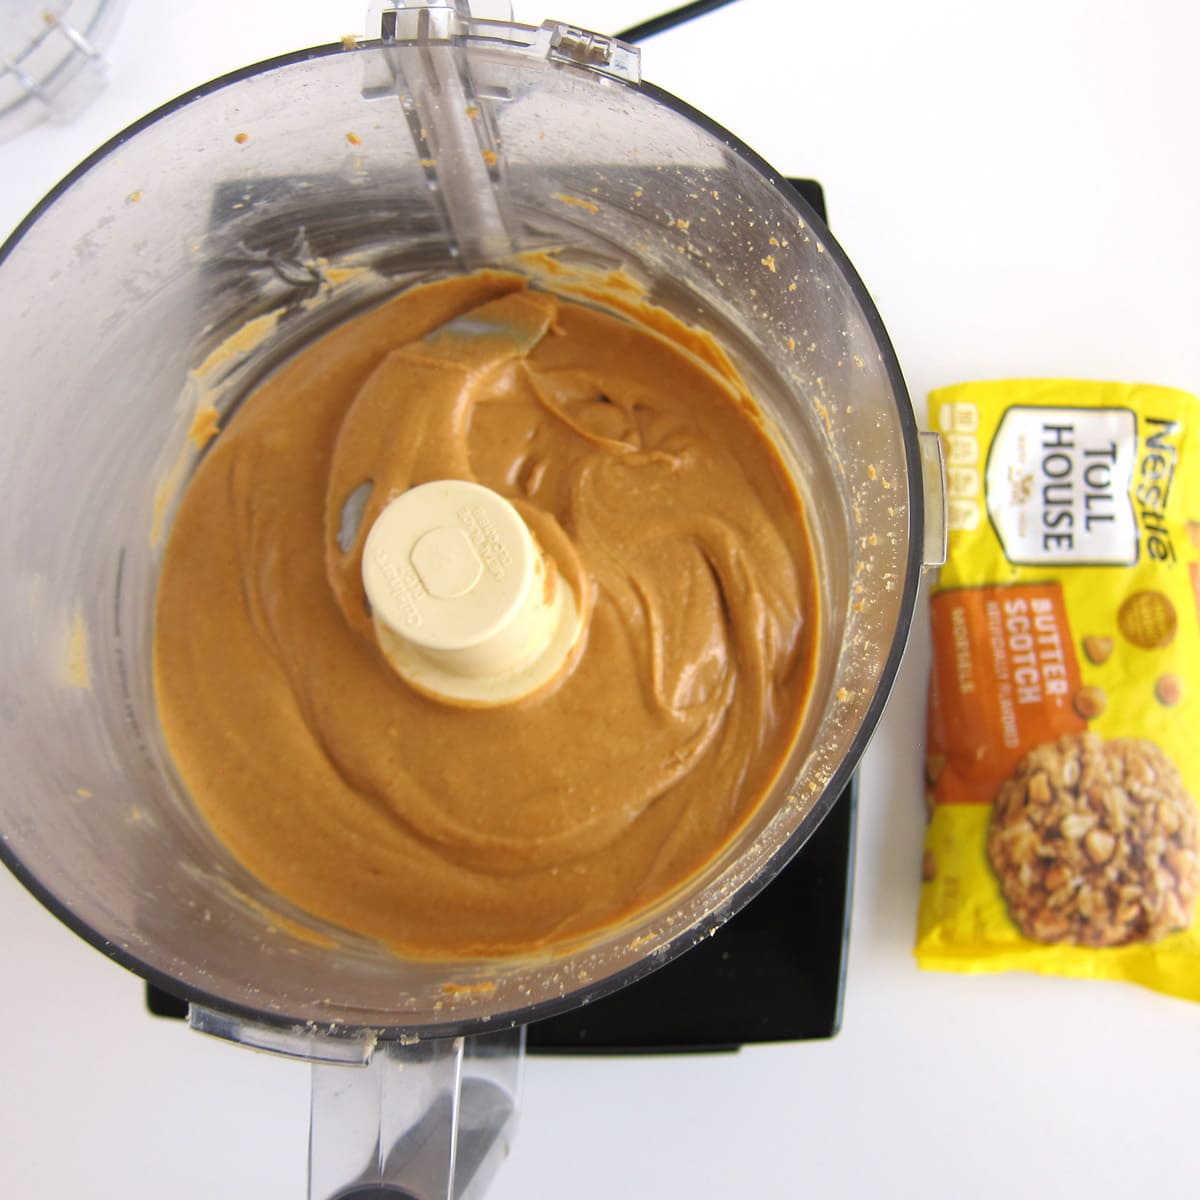 making butterscotch peanut butter.